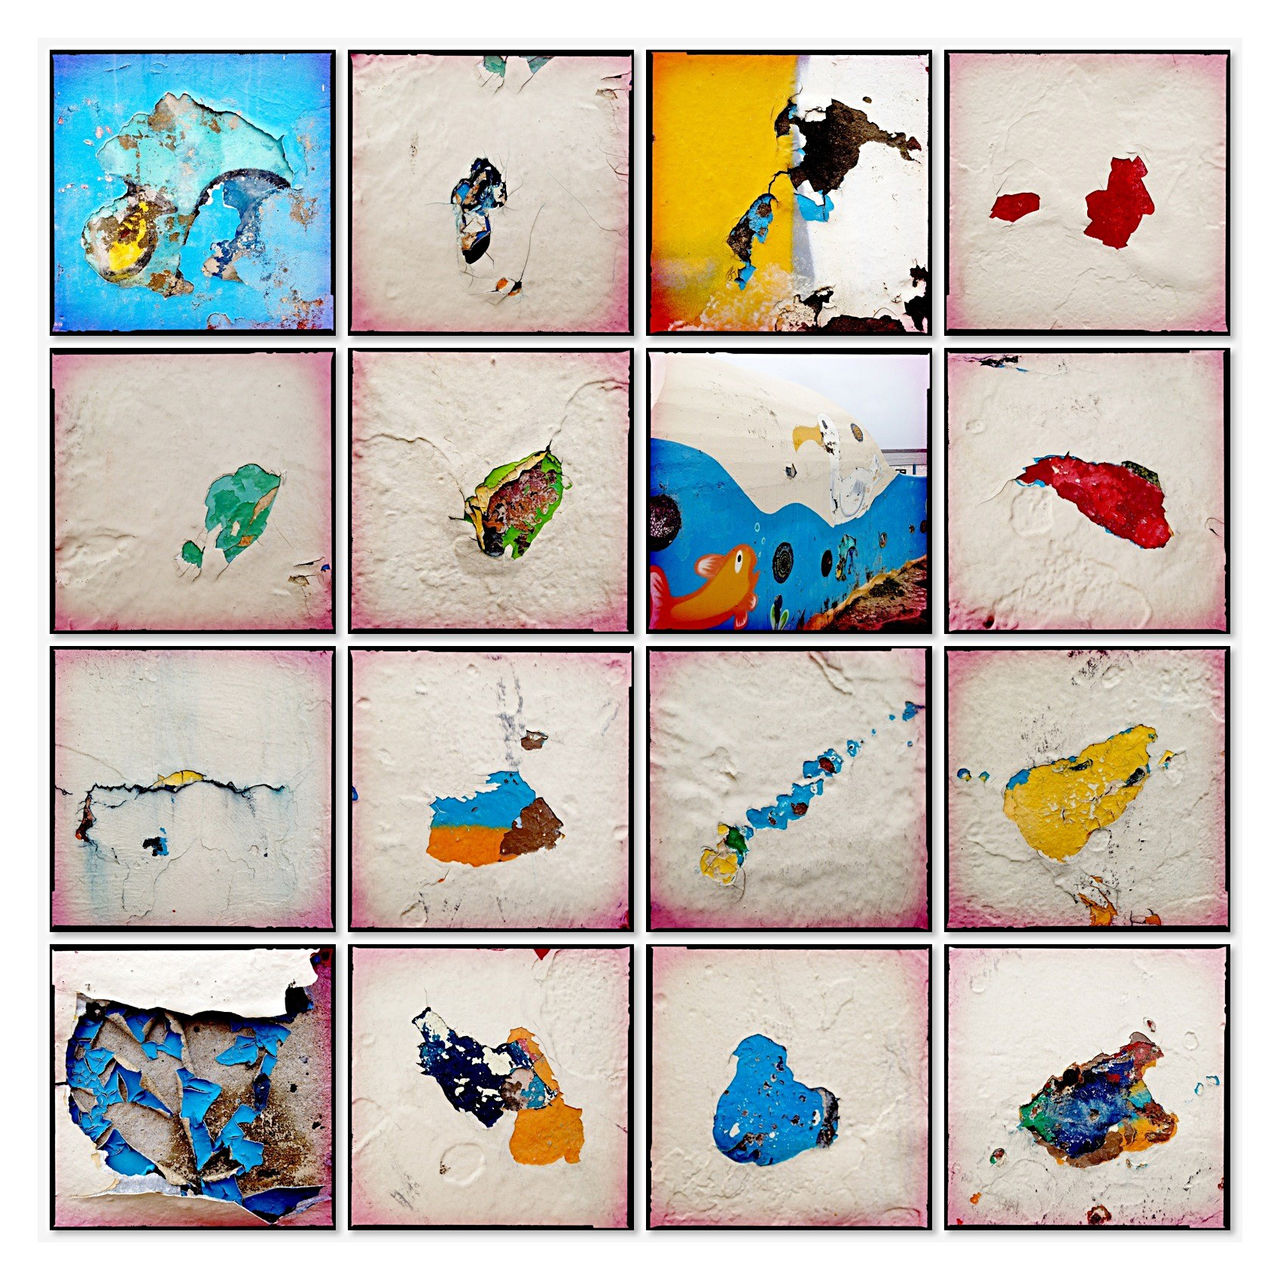 Sechzehn quadratische Bilder zu einer Collage arrangiert. Kleckse abblätternder Farbe an einer Kaimauer an der Nordsee. Sher bunt in gelb, blau, rot und weiß.